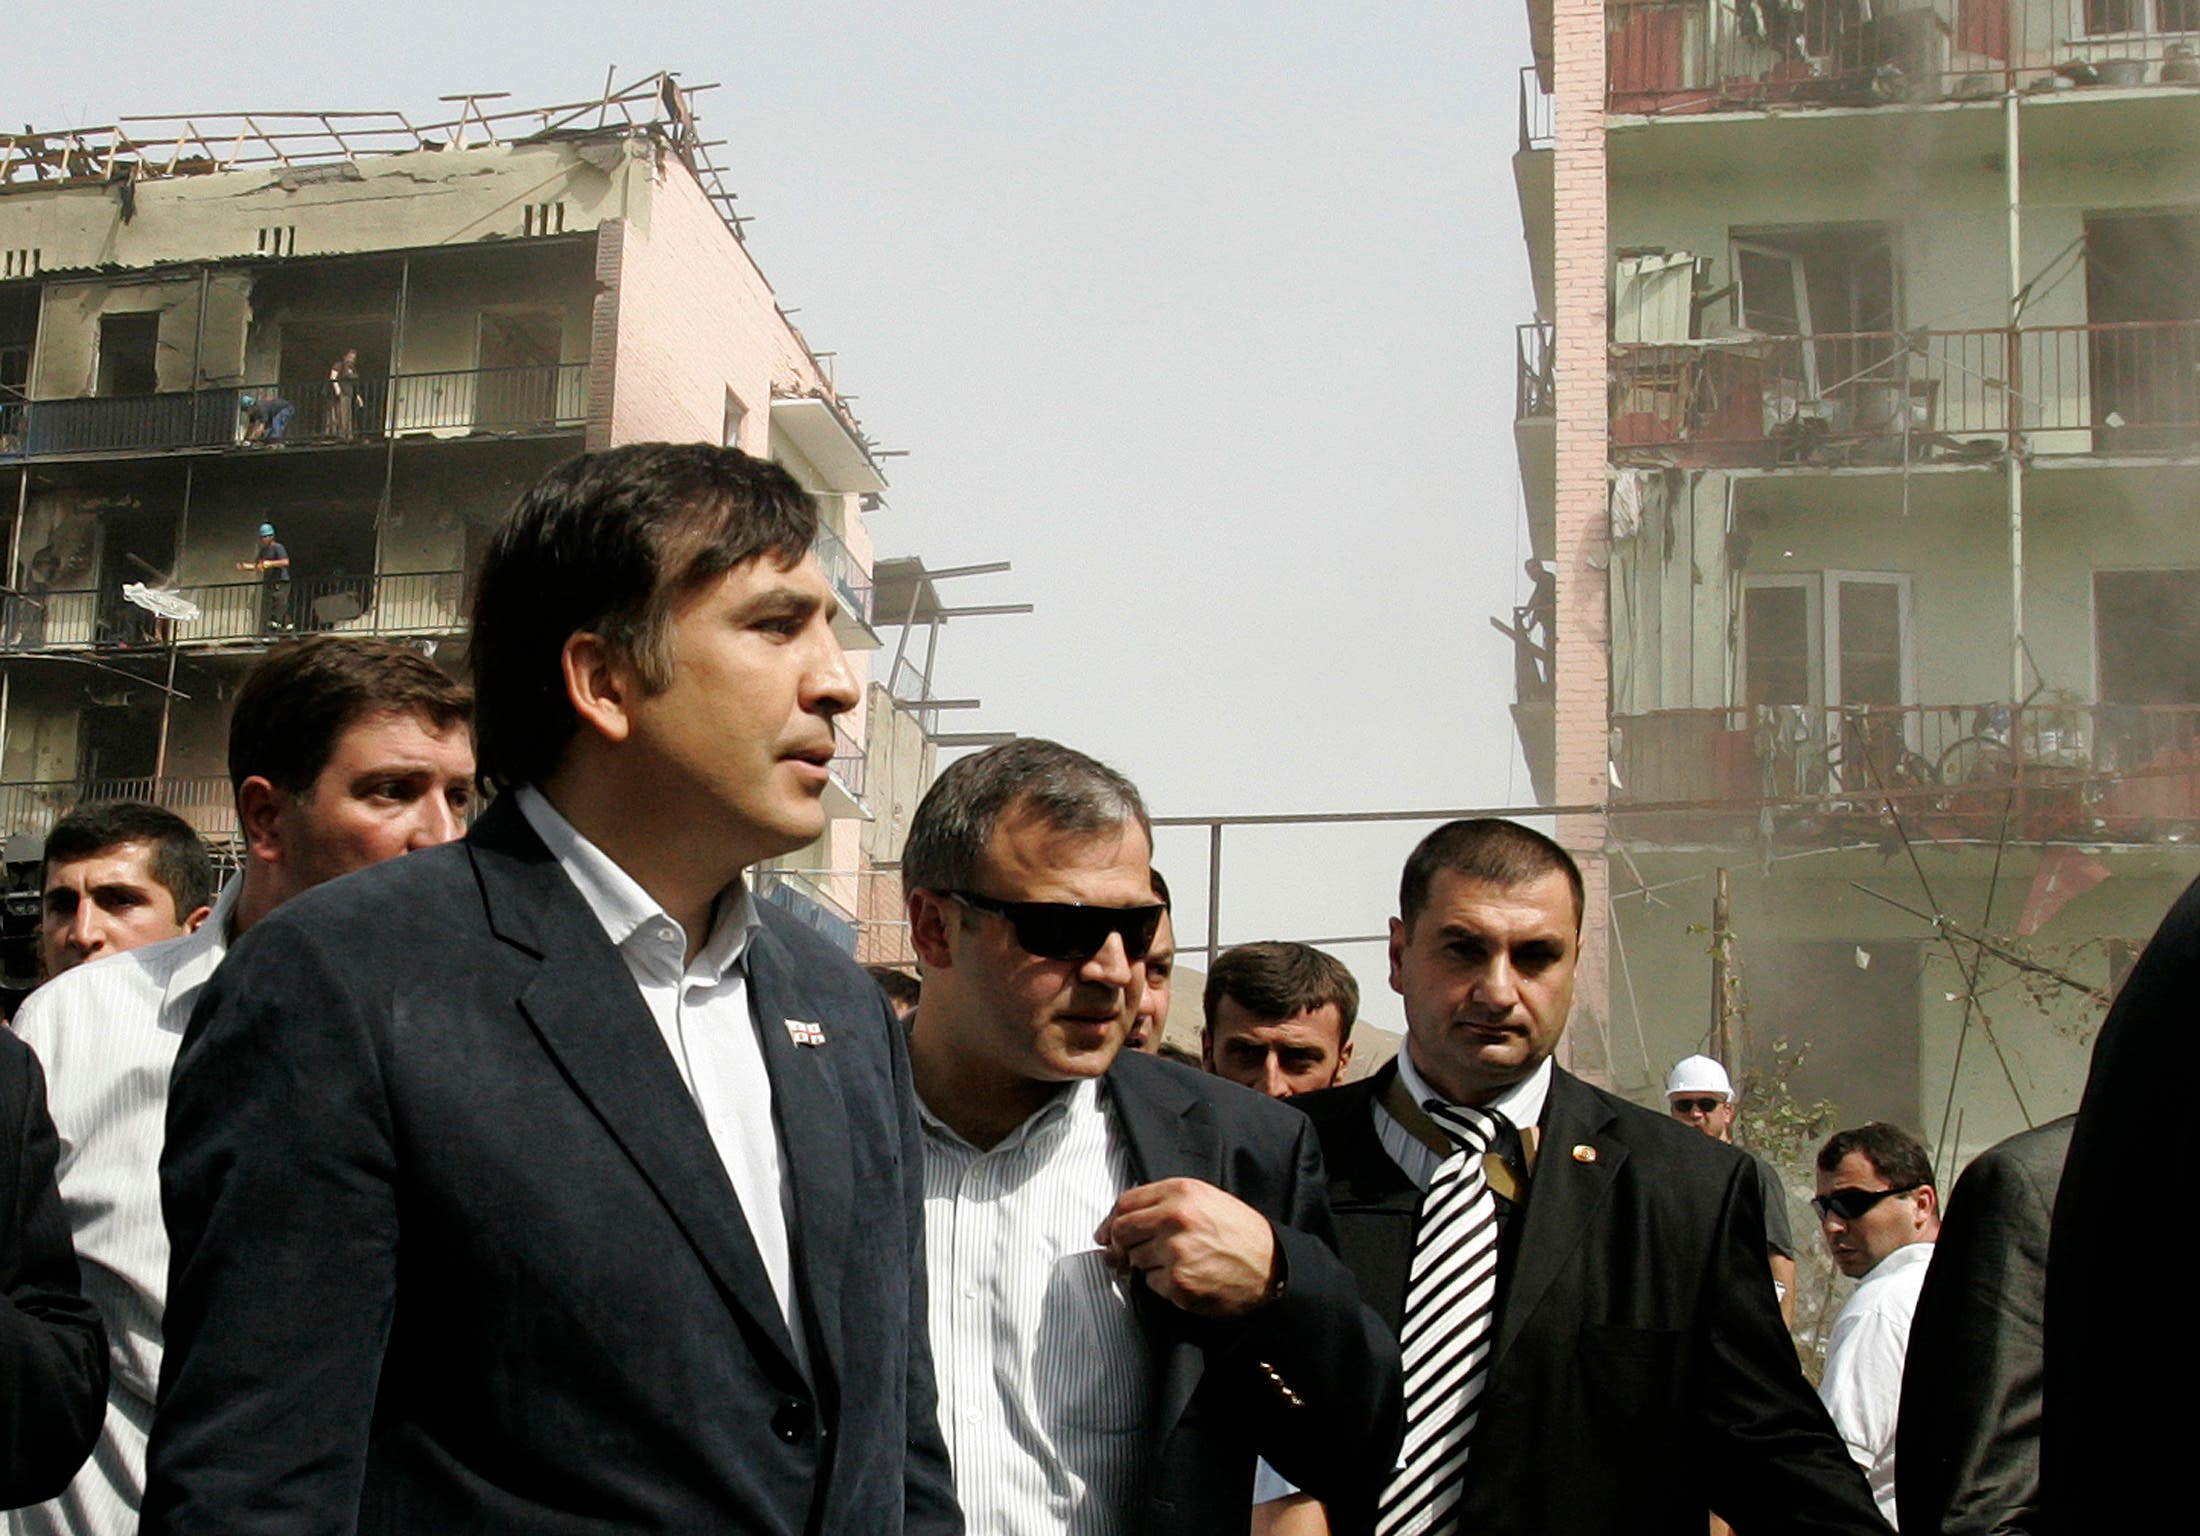 ساكاشفيلي يتفقد مدينة غوري المتضررة من الحرب من روسيا في 2008